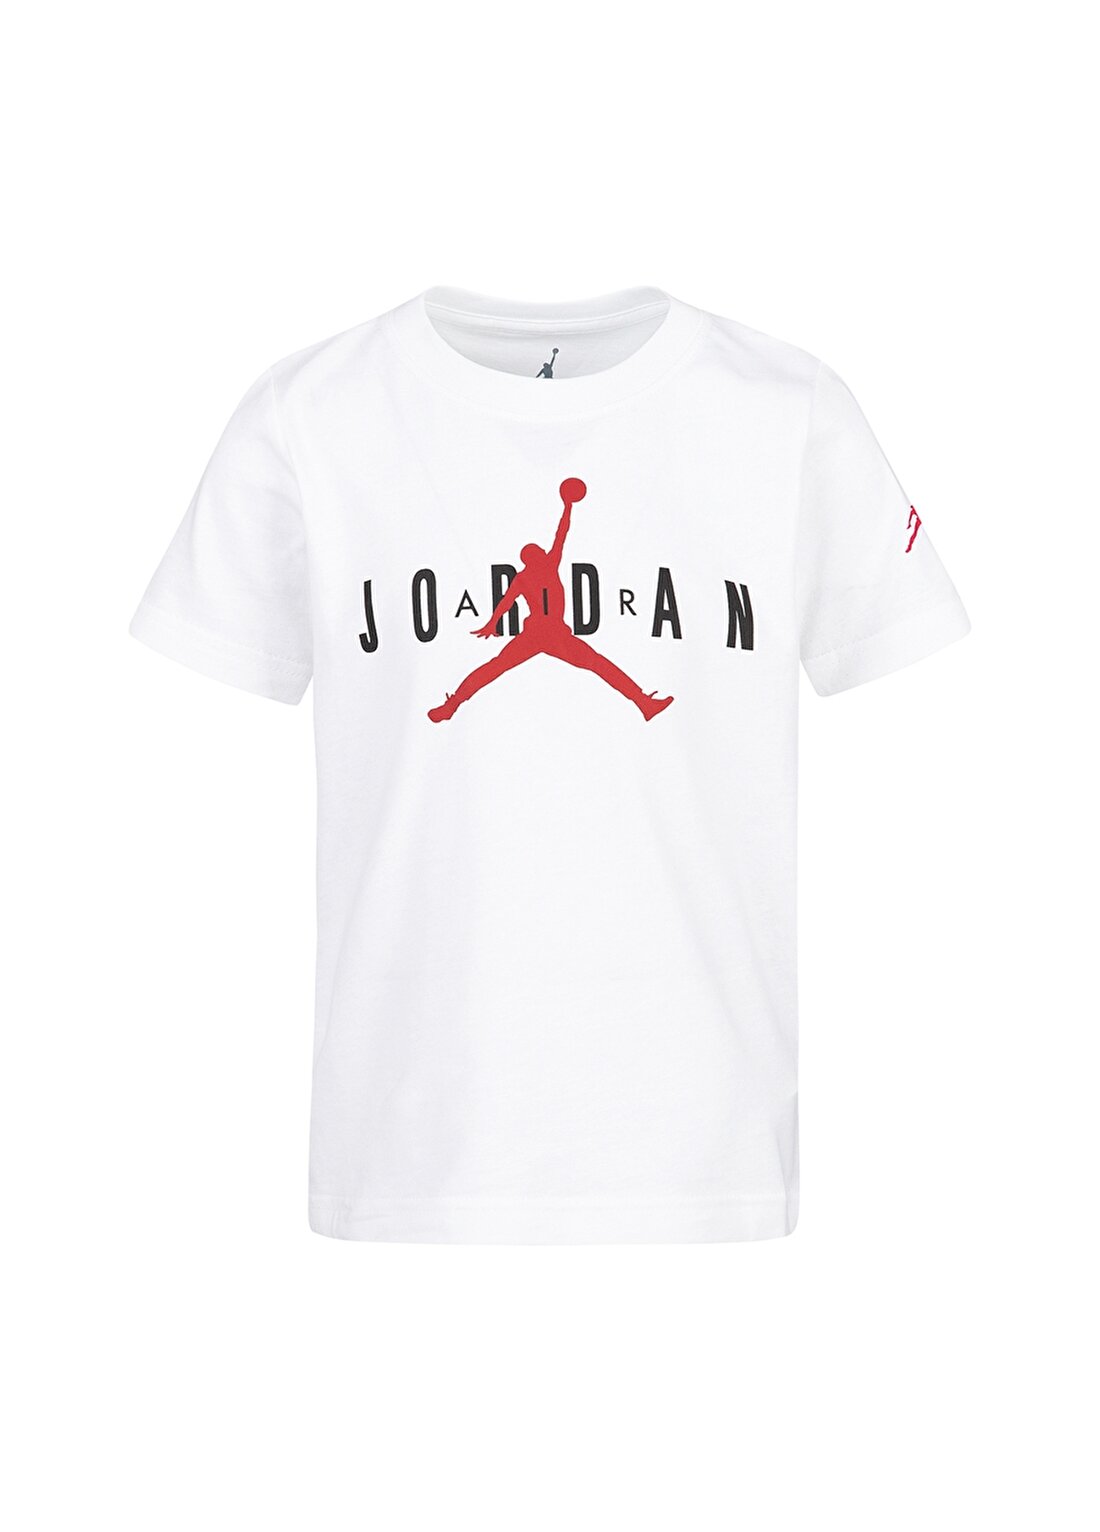 Nike 855175-001 JDB Brand Tee 5 Beyaz Erkek Çocuk T-Shirt